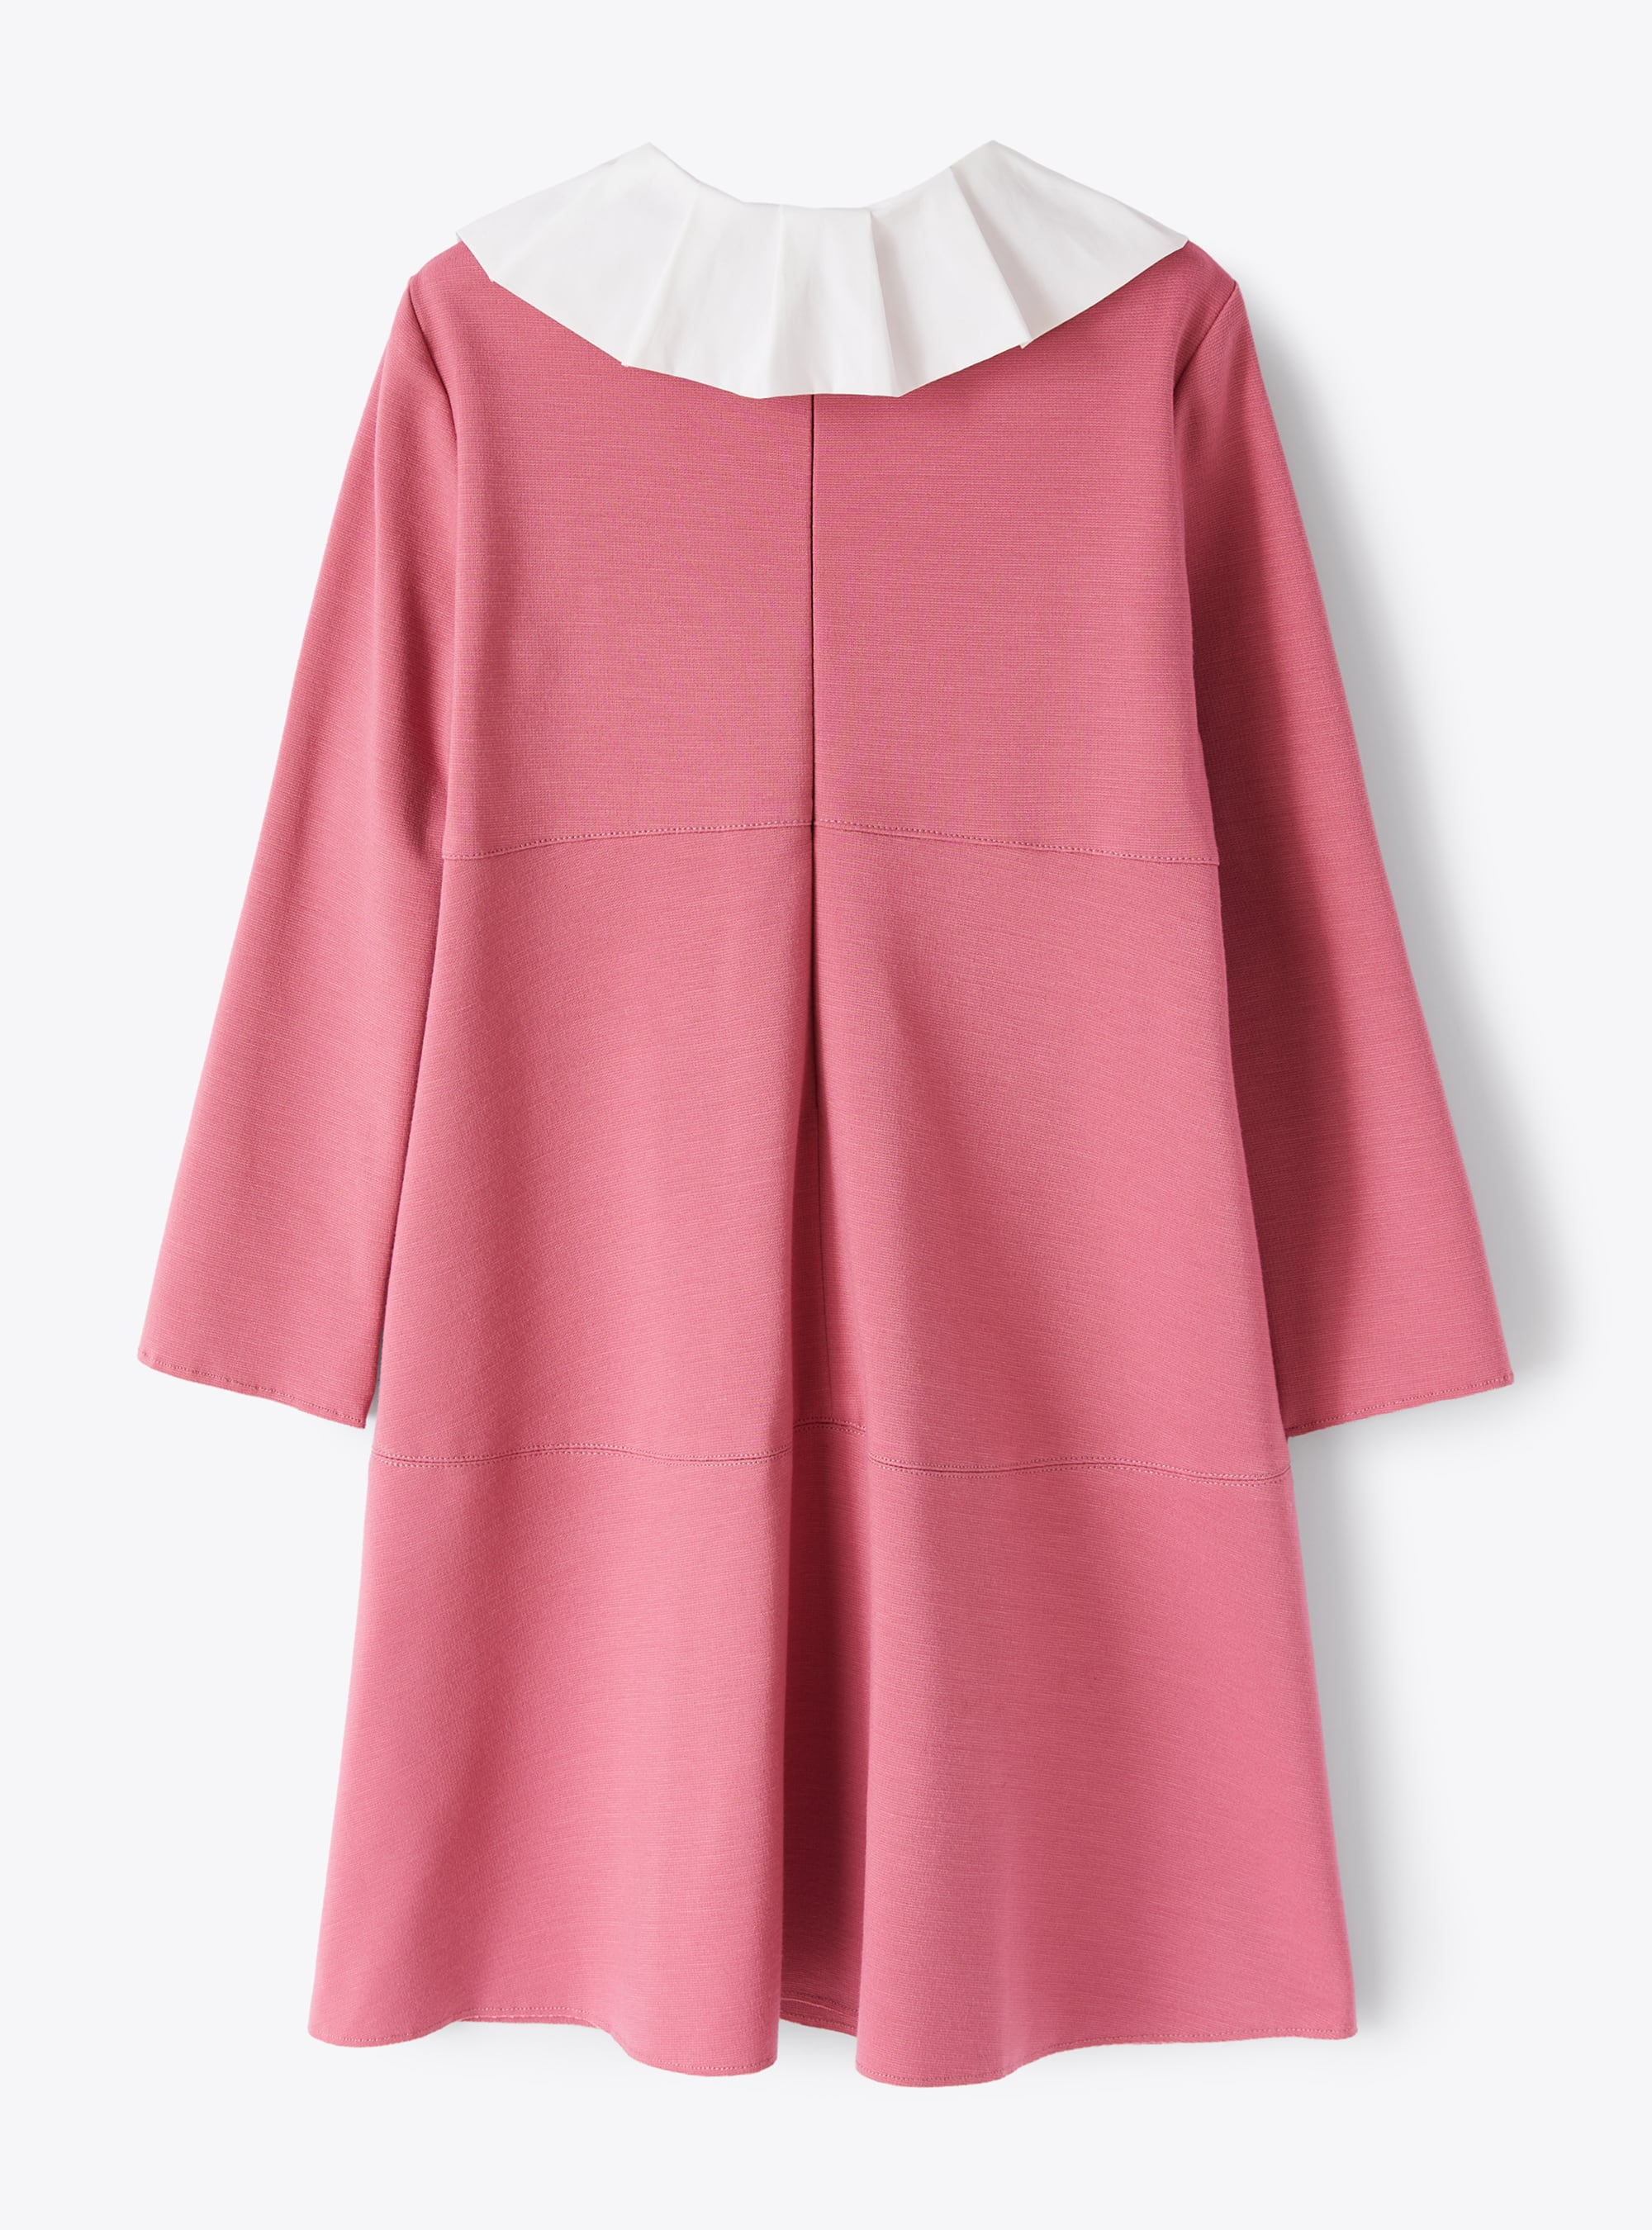 Pinkfarbenes Kleid mit Kellerfalte - Rot | Il Gufo